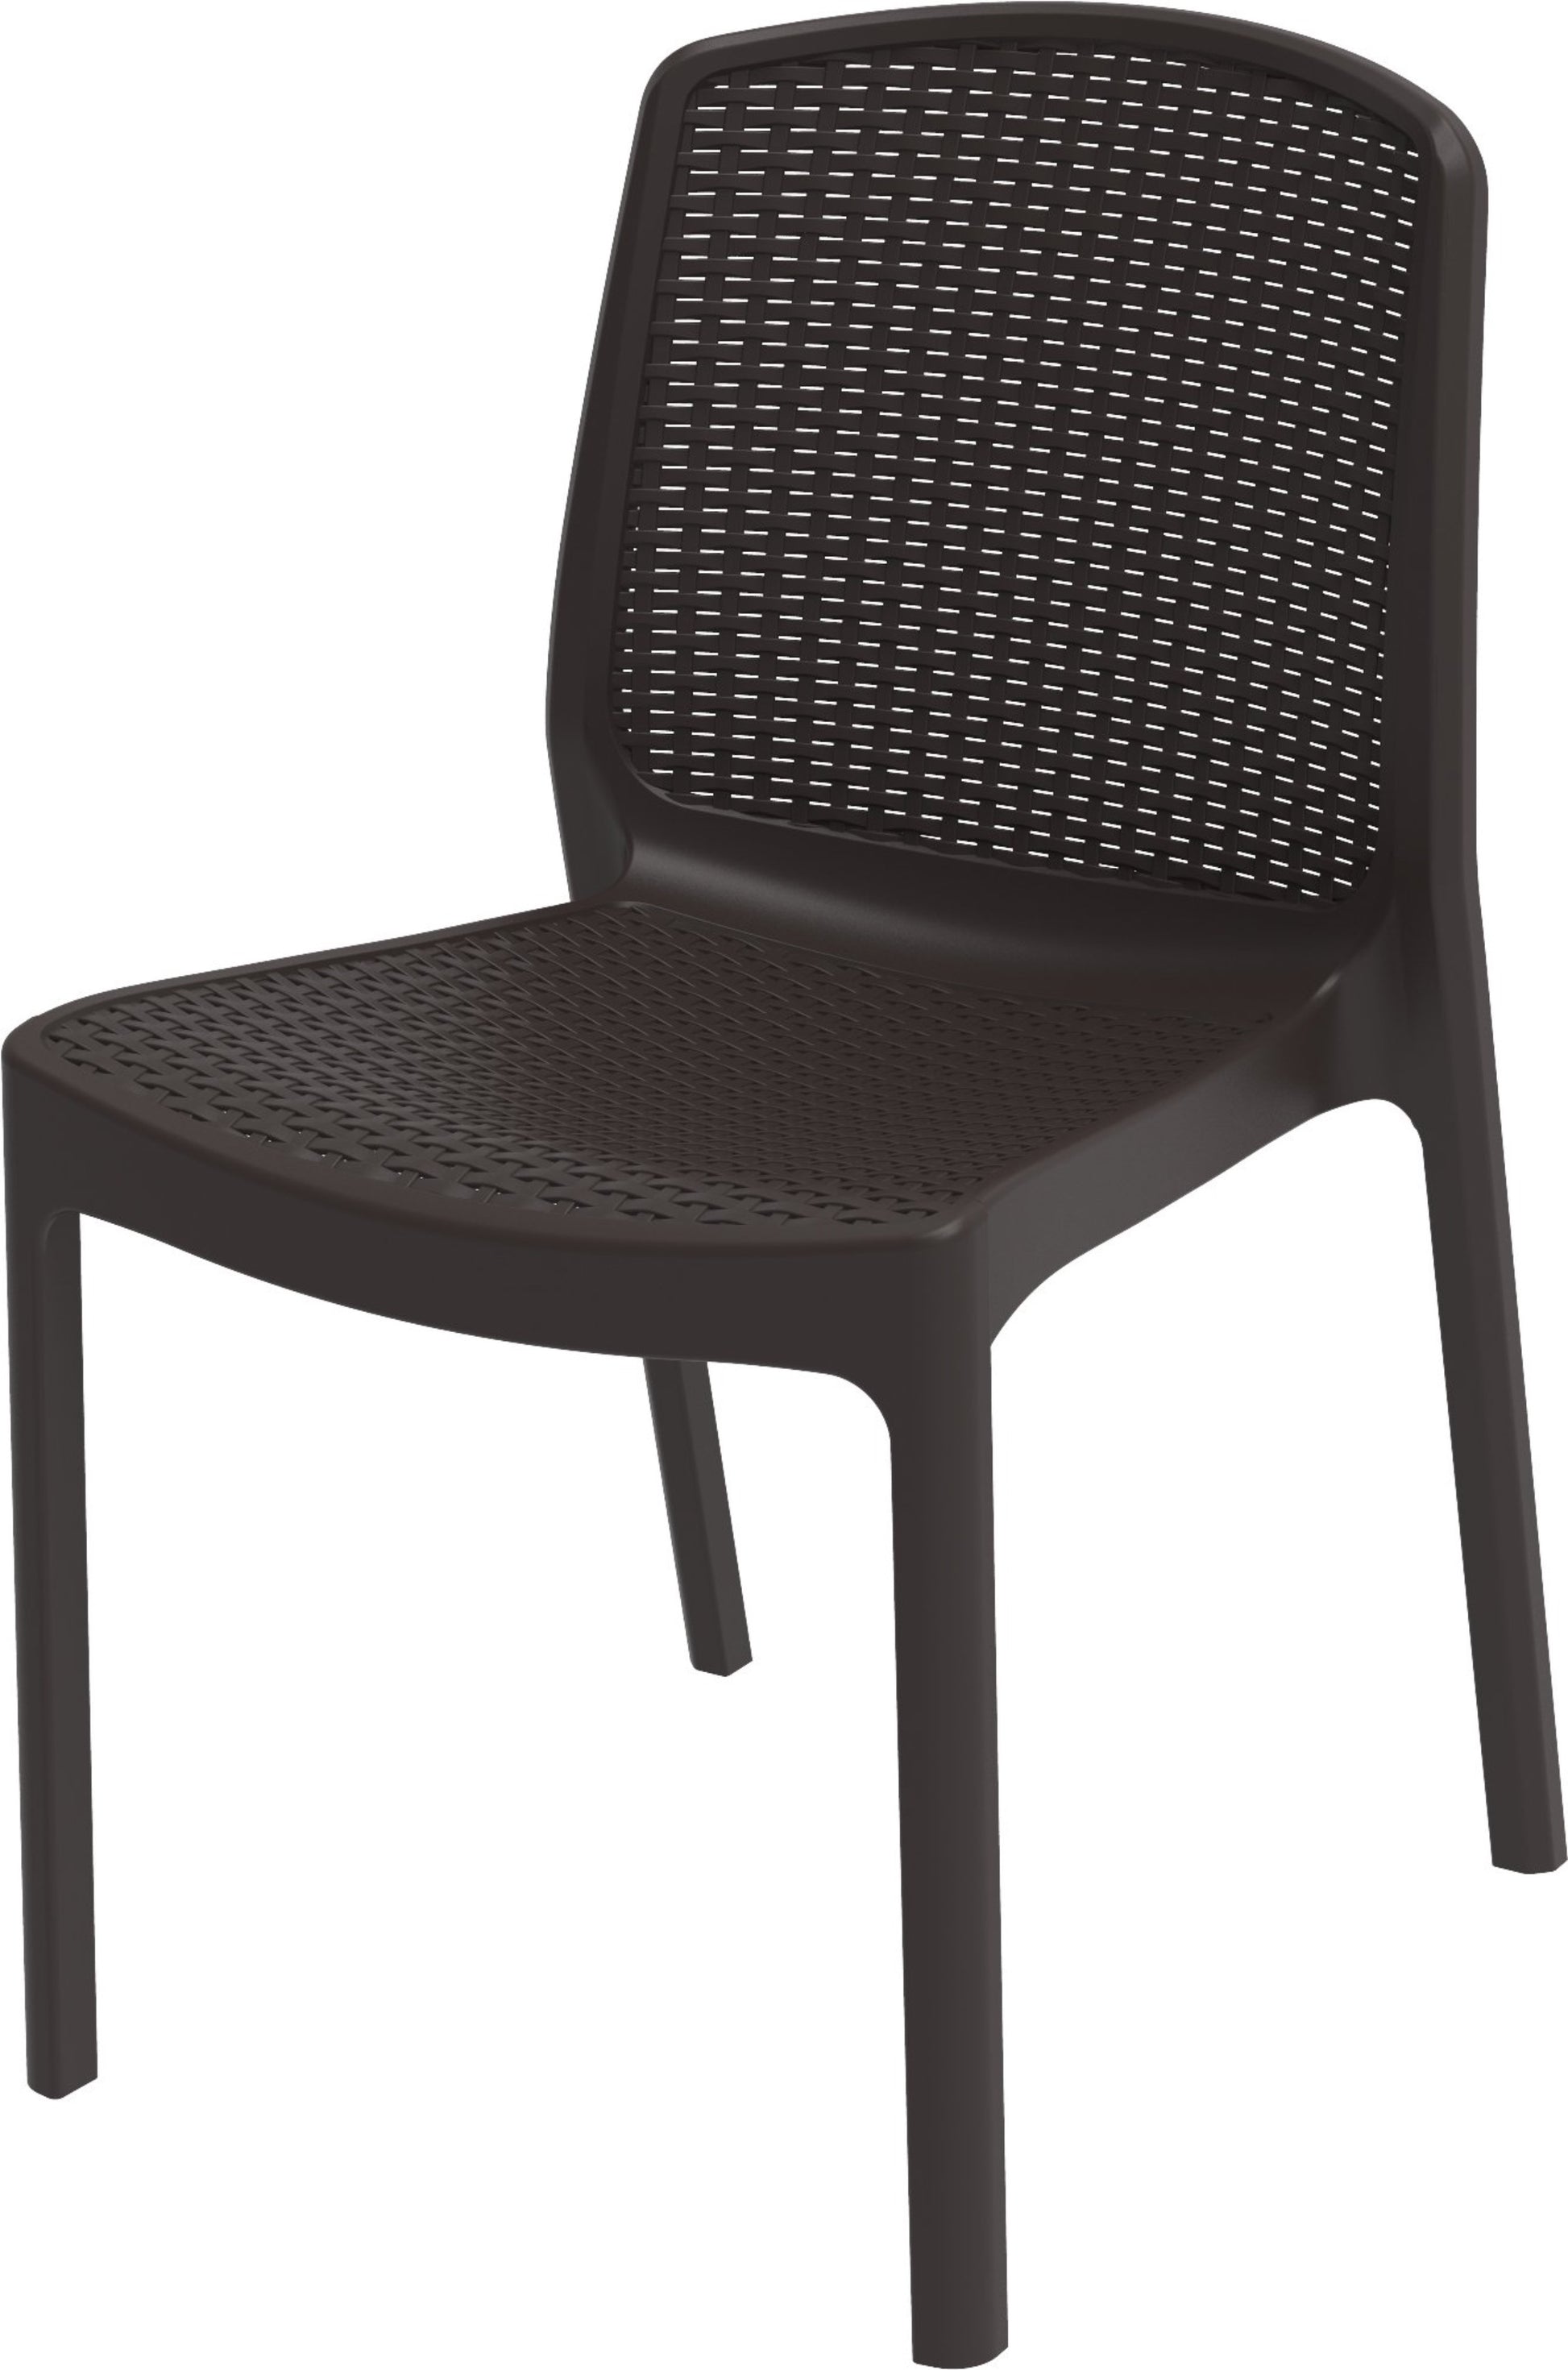 Duramax Rattan Patio Chair